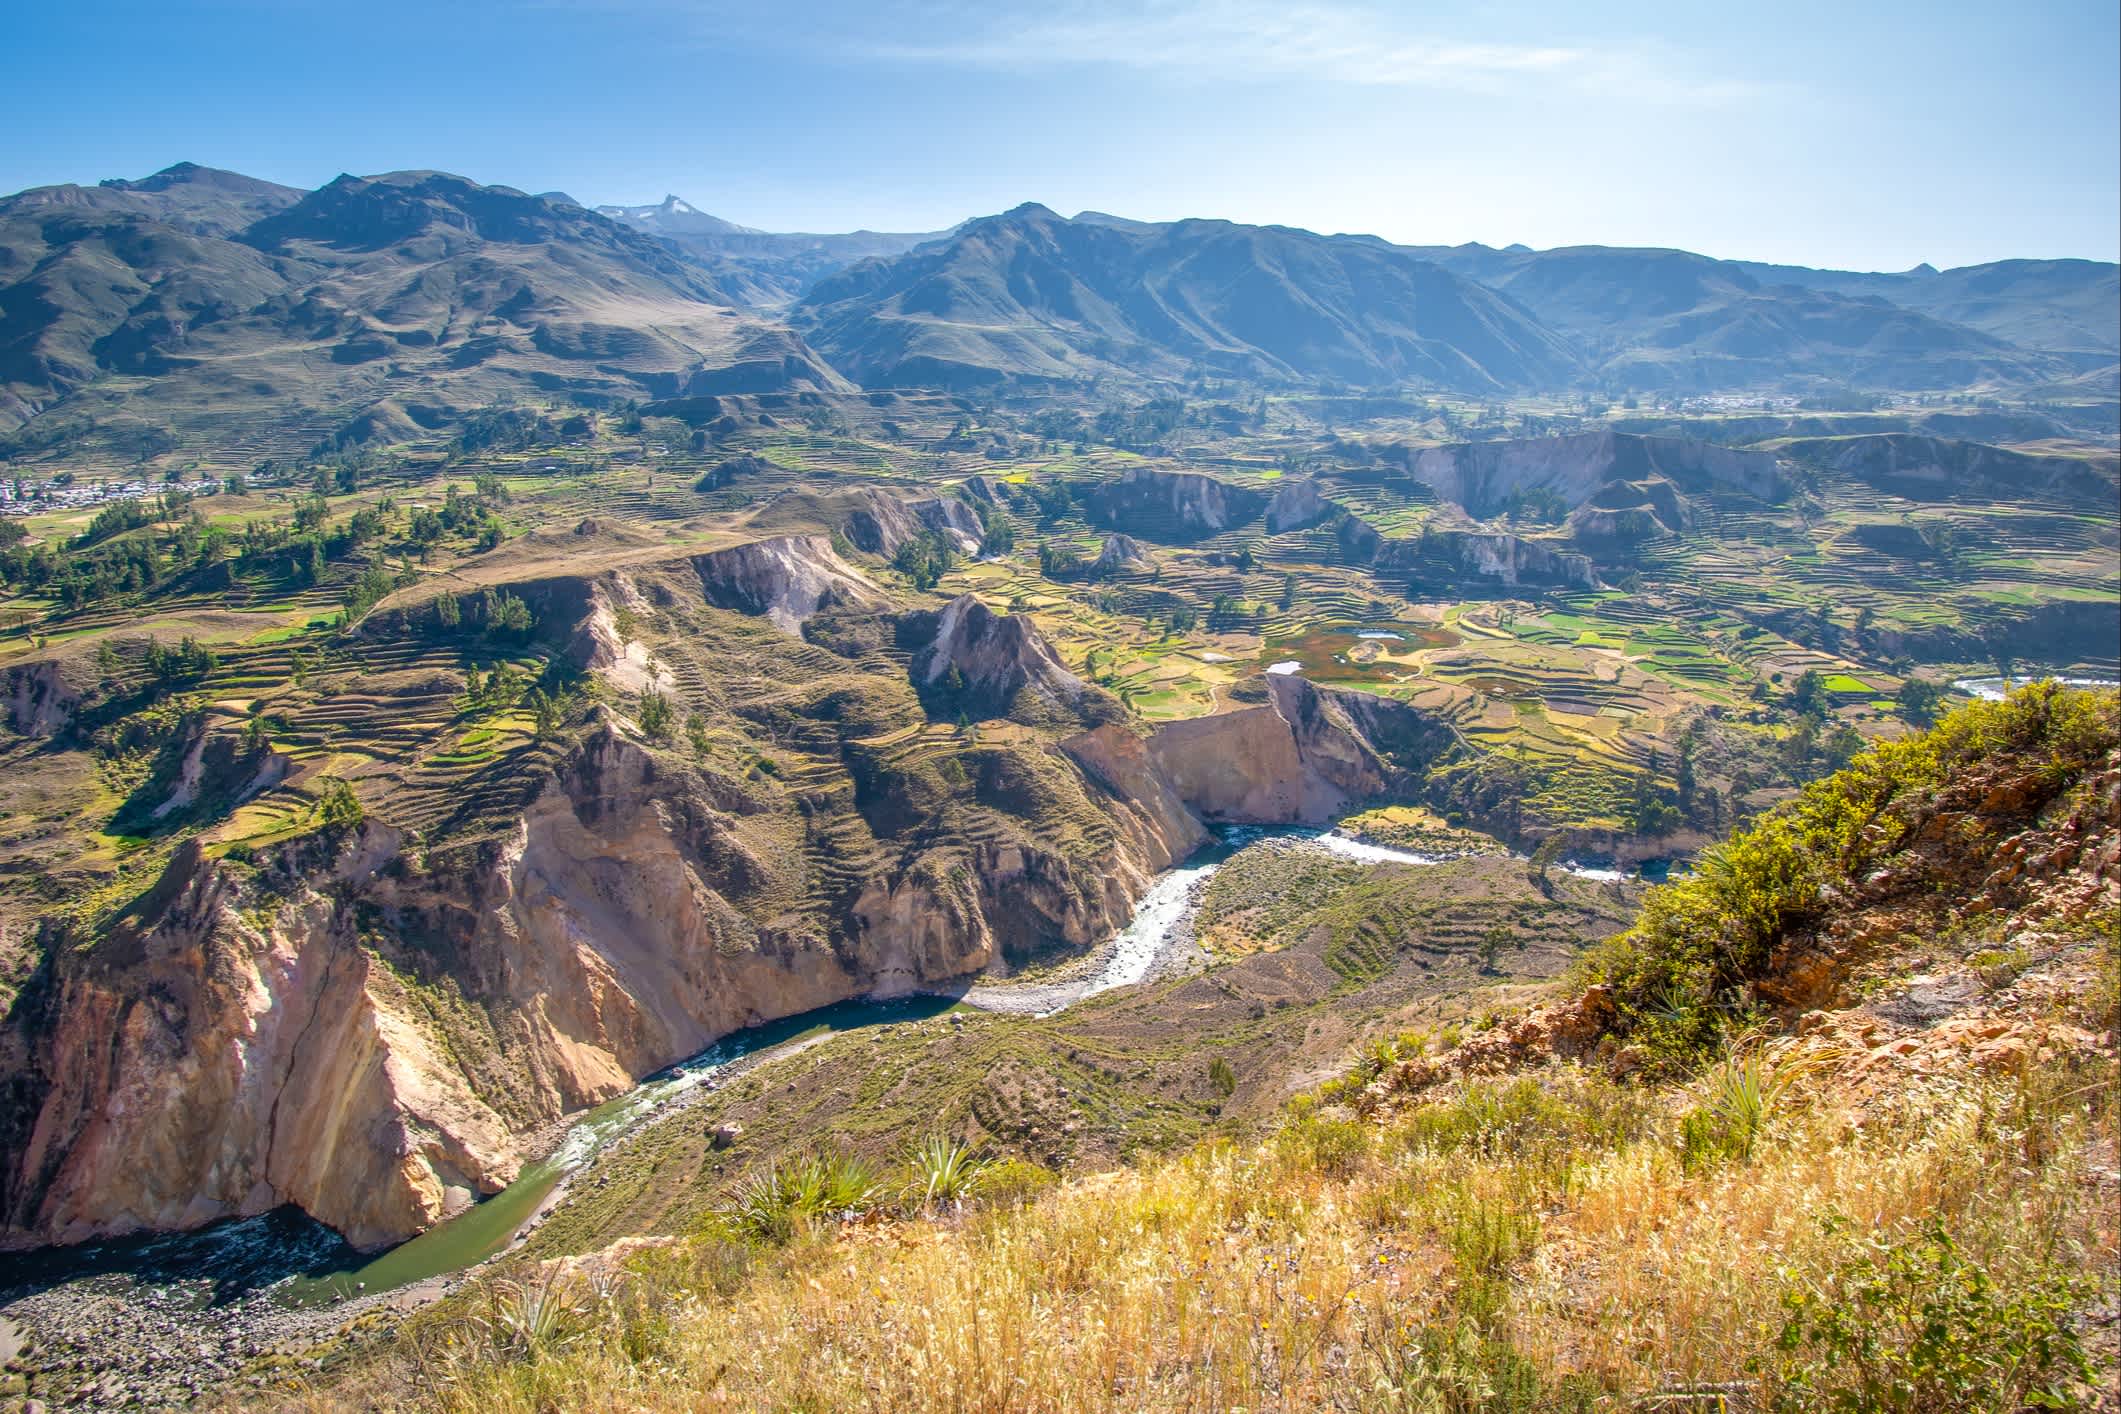 Vue sur le canyon del Colca, Arequipa, Pérou

